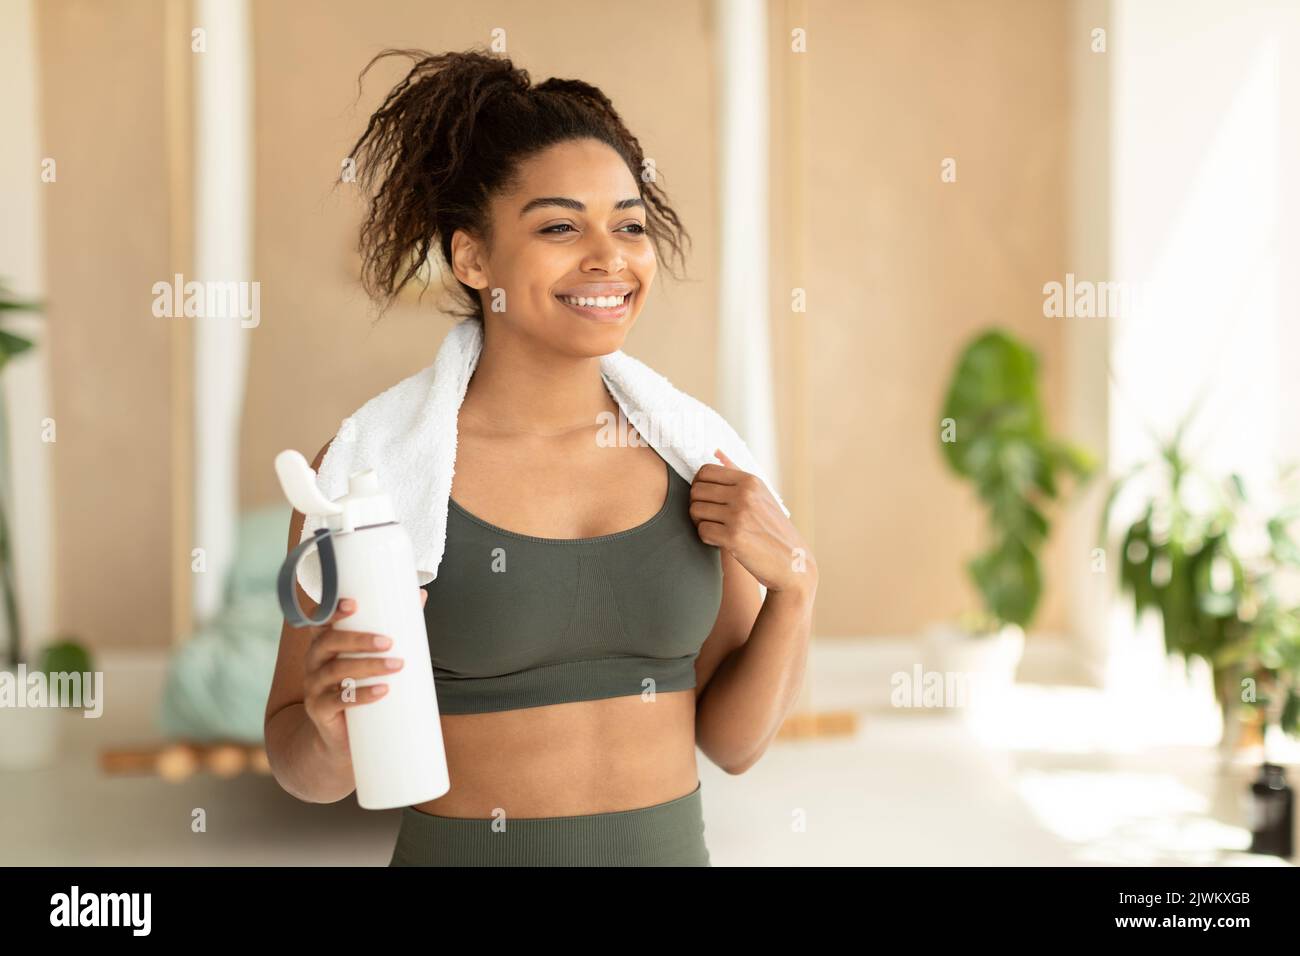 Portrait d'une femme noire heureuse en vêtements de sport et serviette blanche sur le cou tenant une bouteille avec de l'eau douce, espace copie Banque D'Images